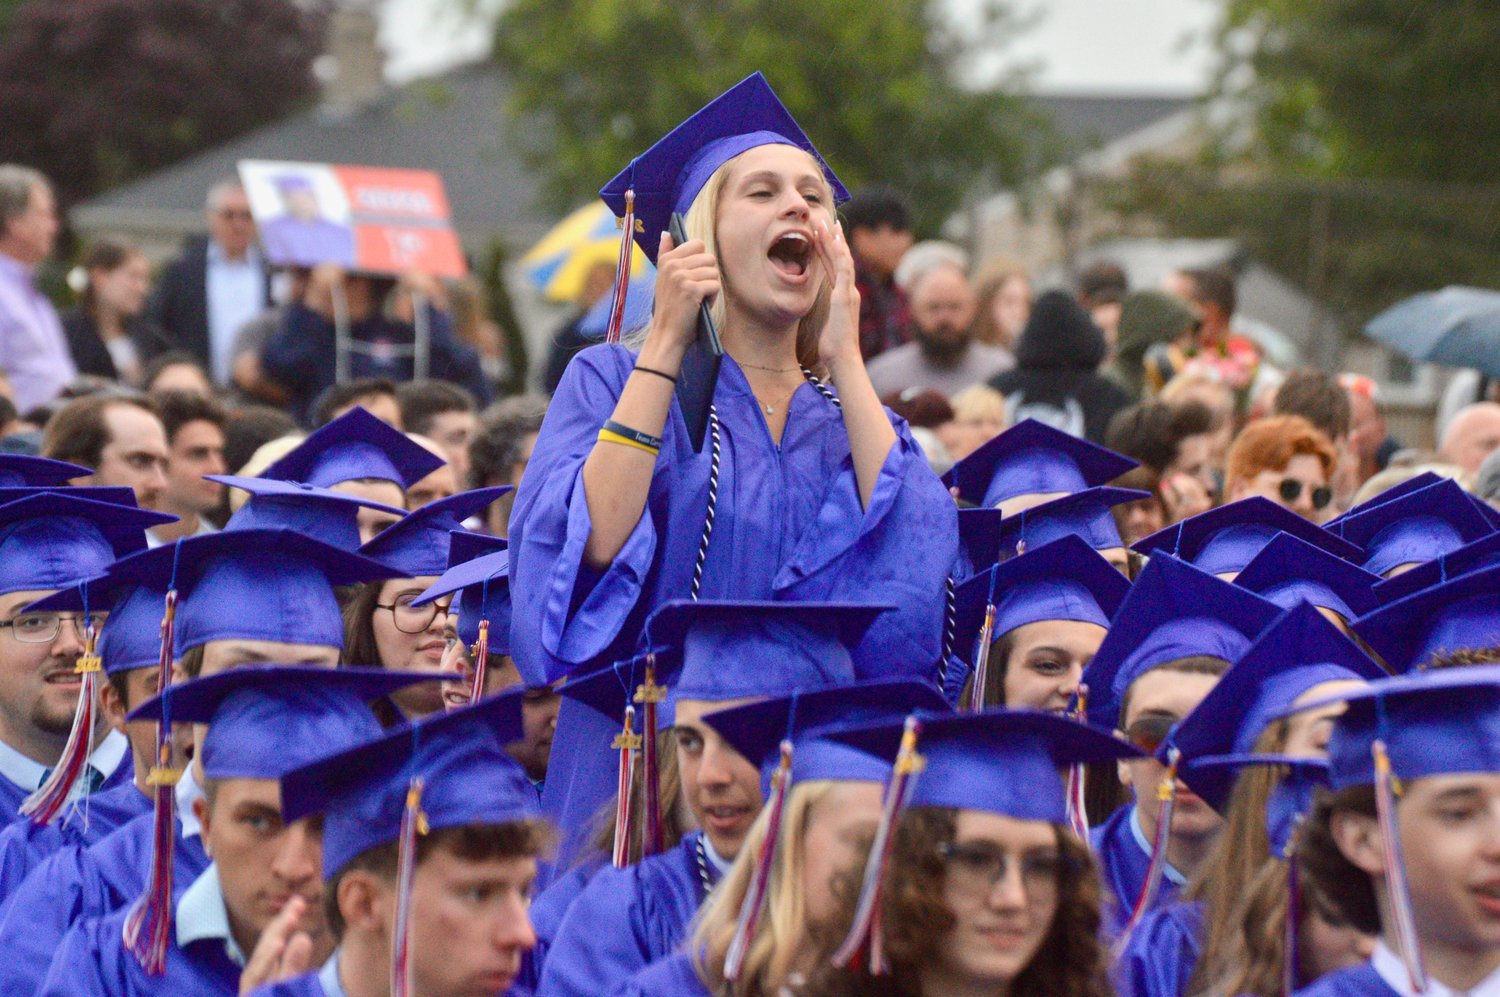 Juliana DeComo gives a shout-out to a fellow grad collecting a diploma.